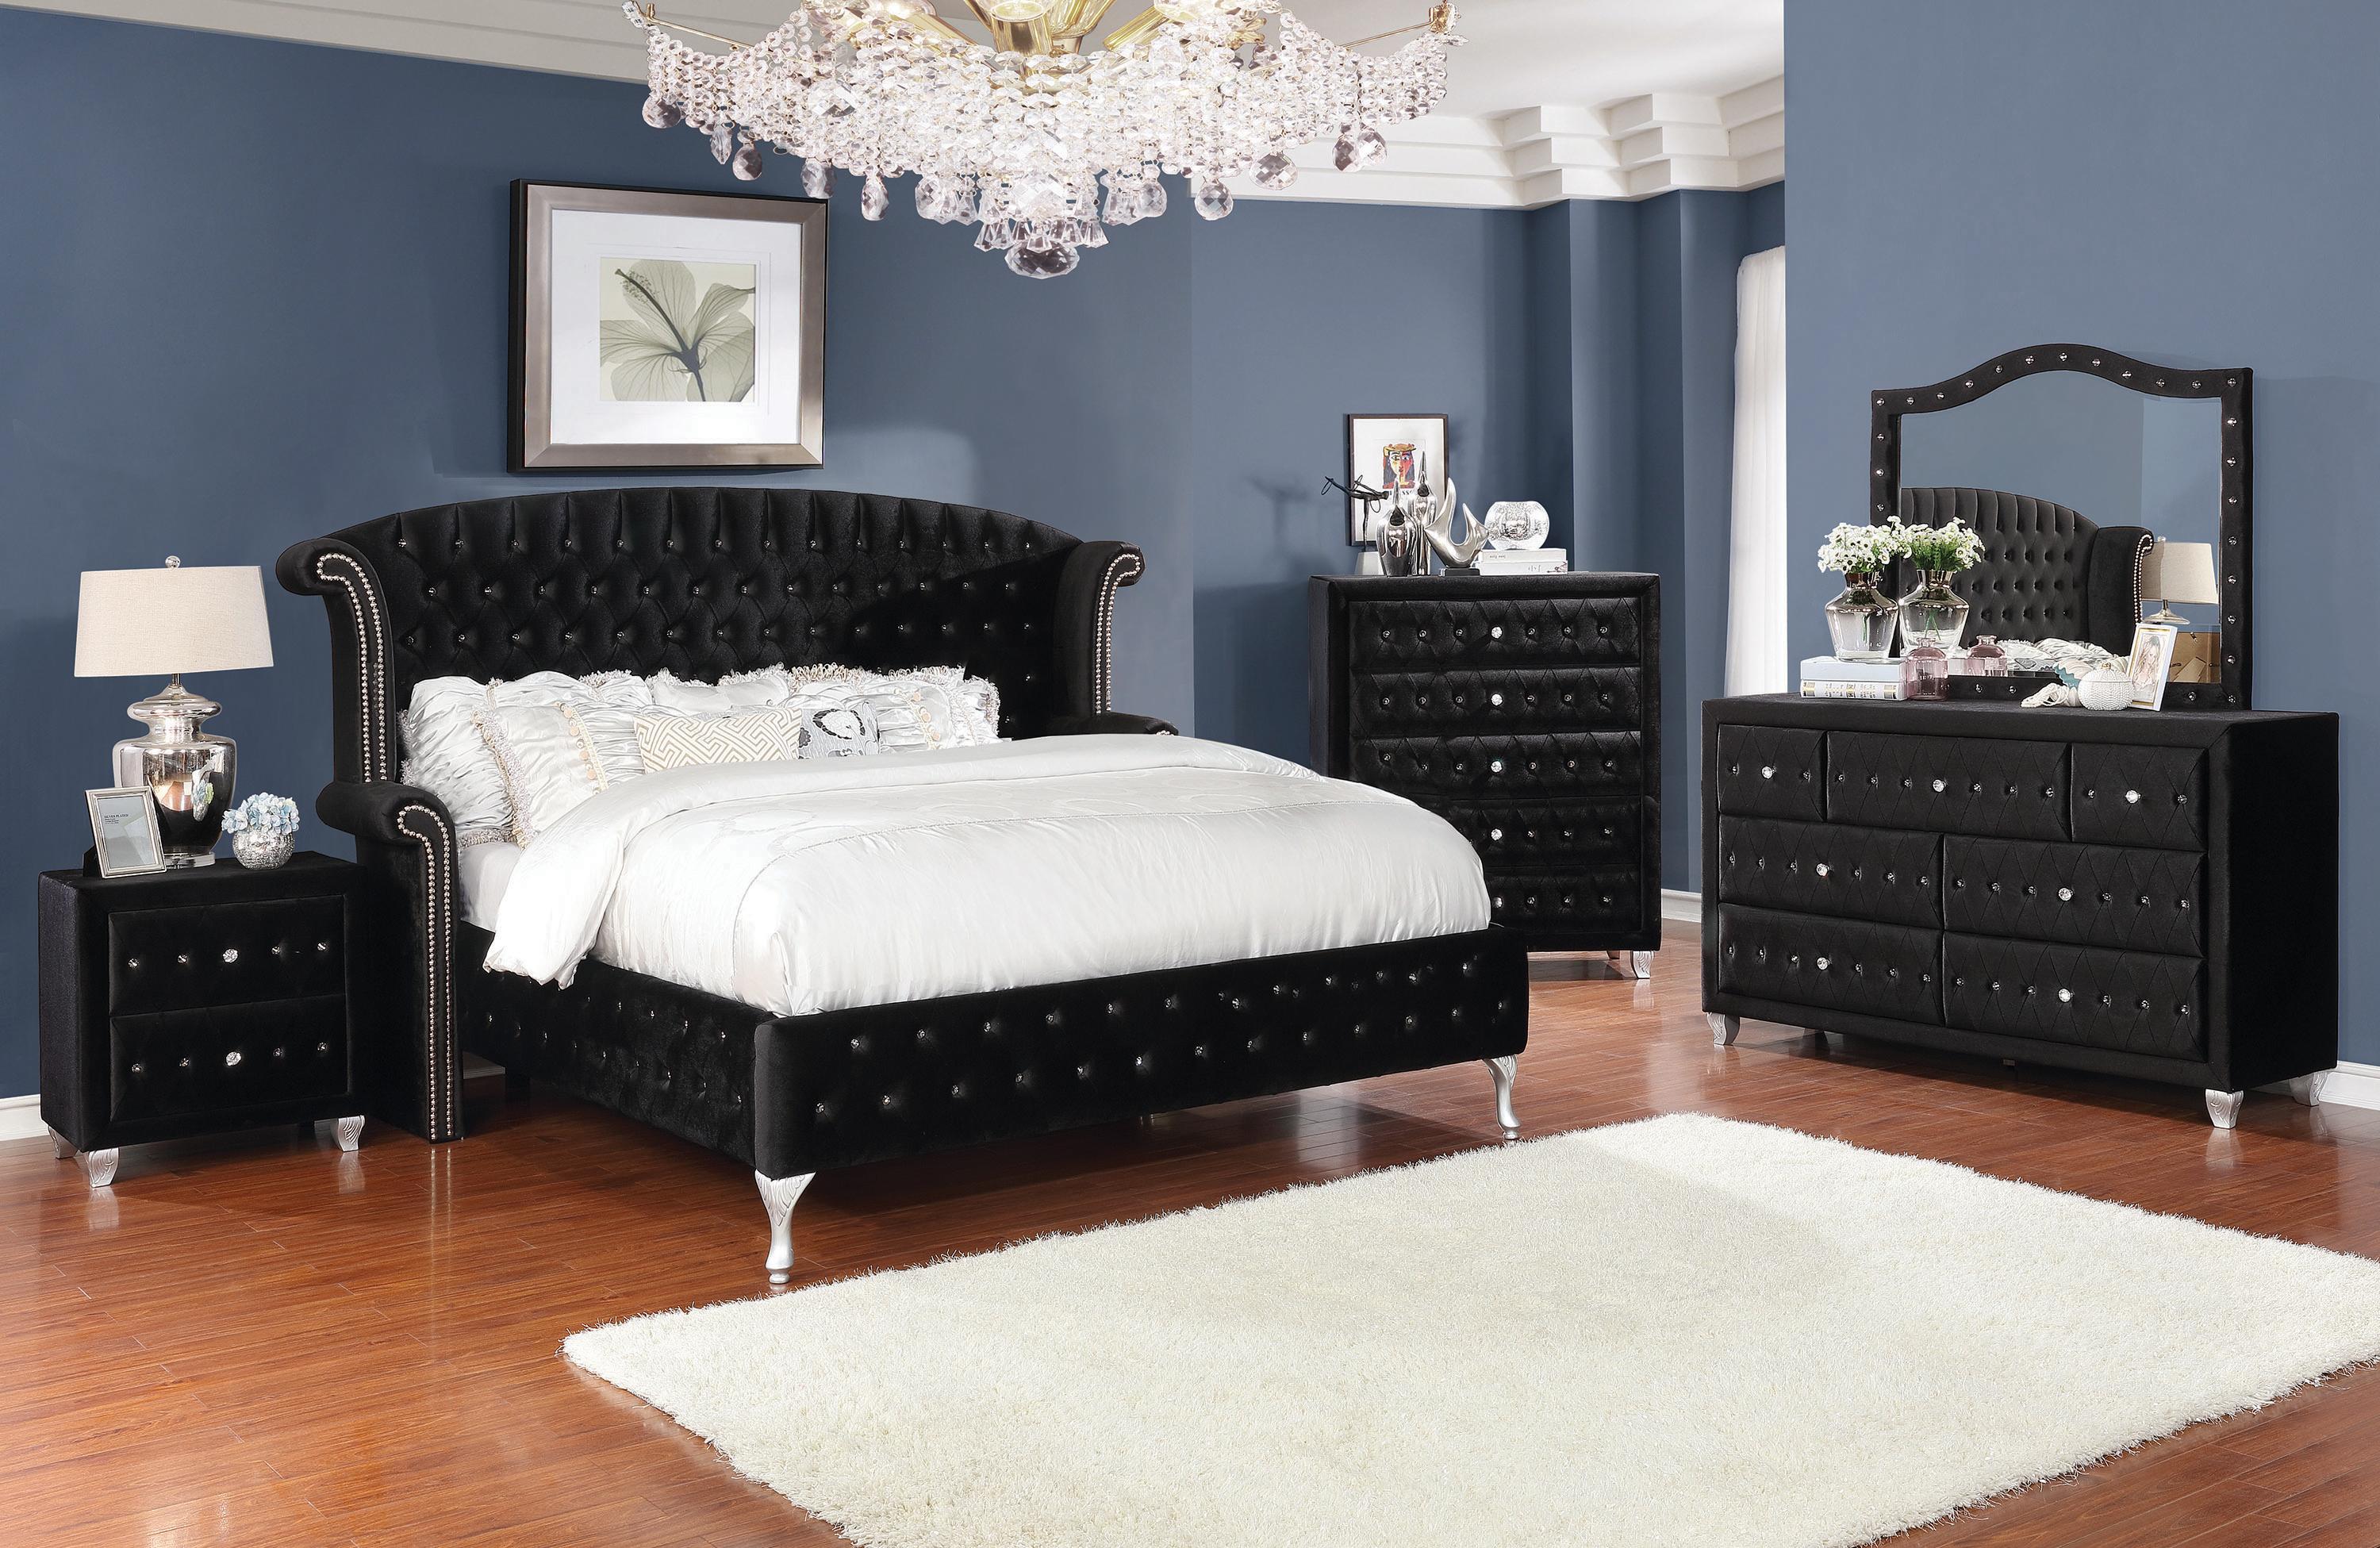 

    
Glam Black Velvet King Bedroom Set 3pcs Coaster 206101KE Deanna
